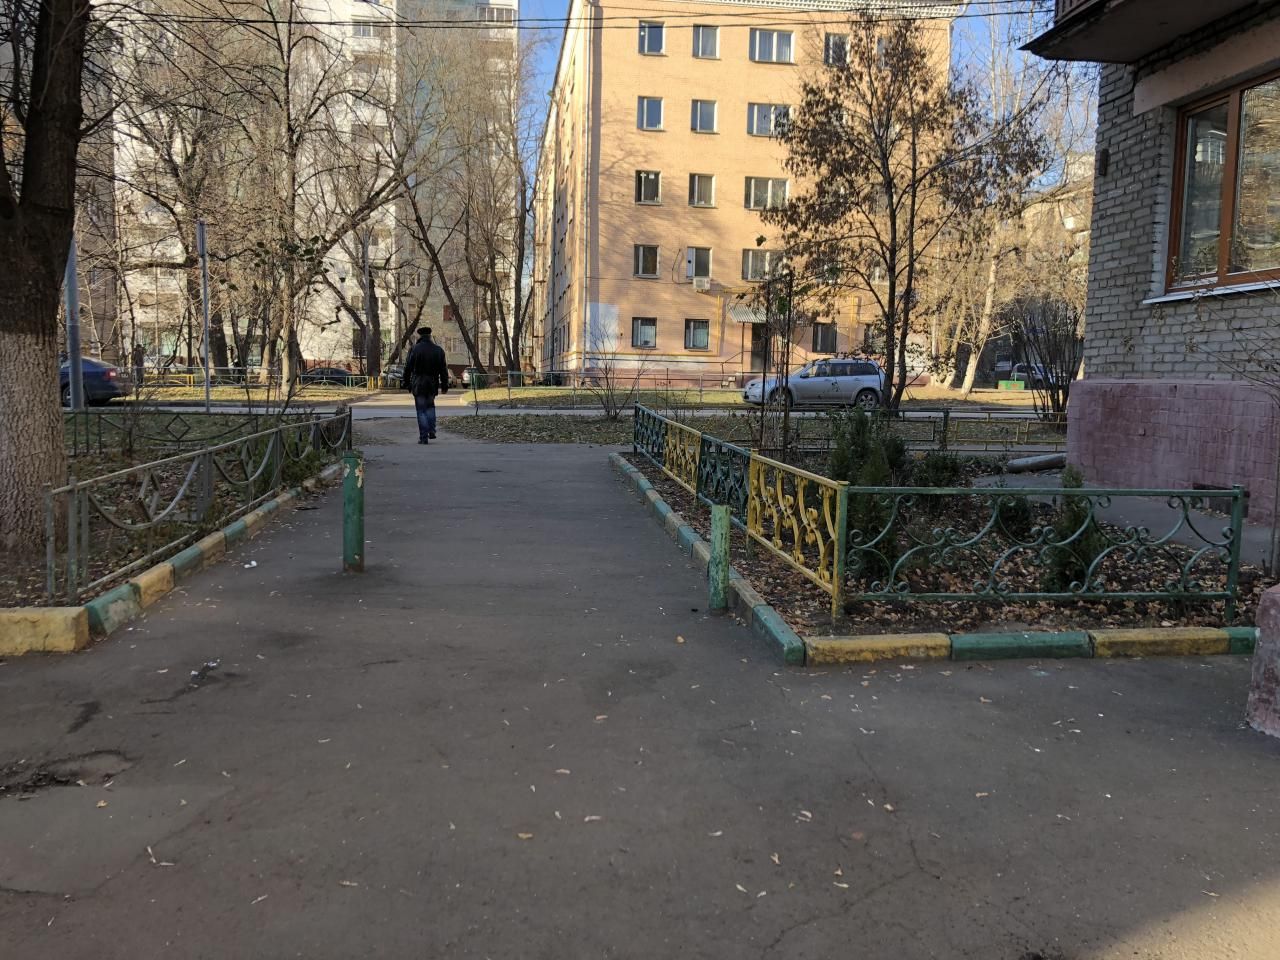 Улица михайлова москва